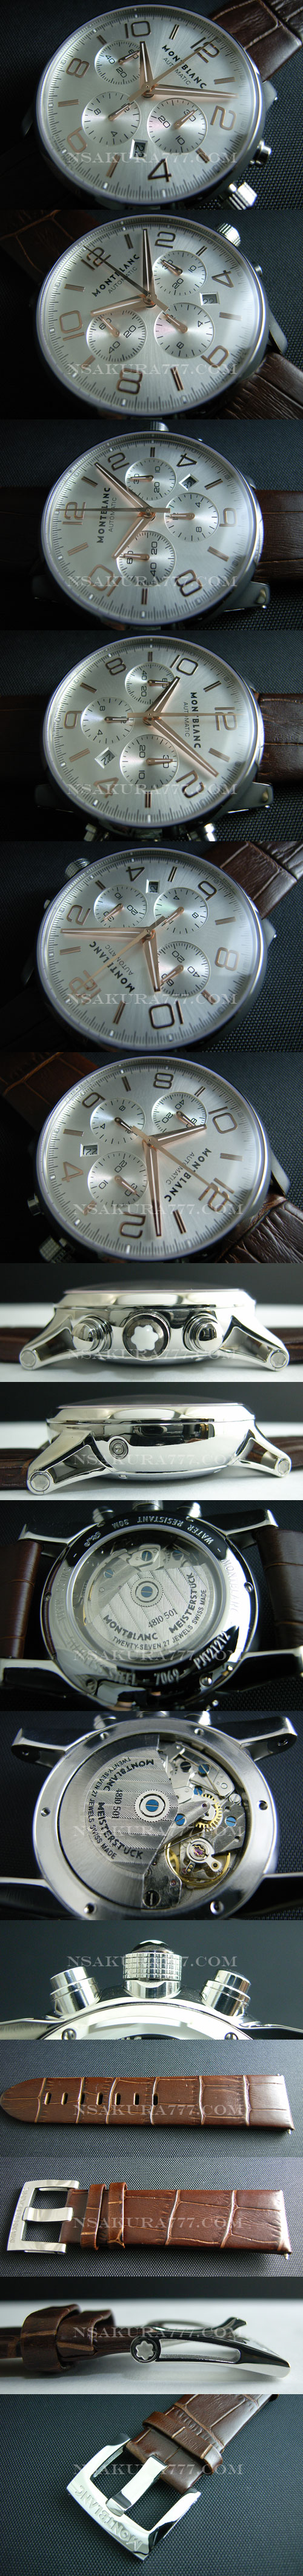 レプリカ時計モンブラン タイムワーカー自動巻廉価版7750 - ウインドウを閉じる